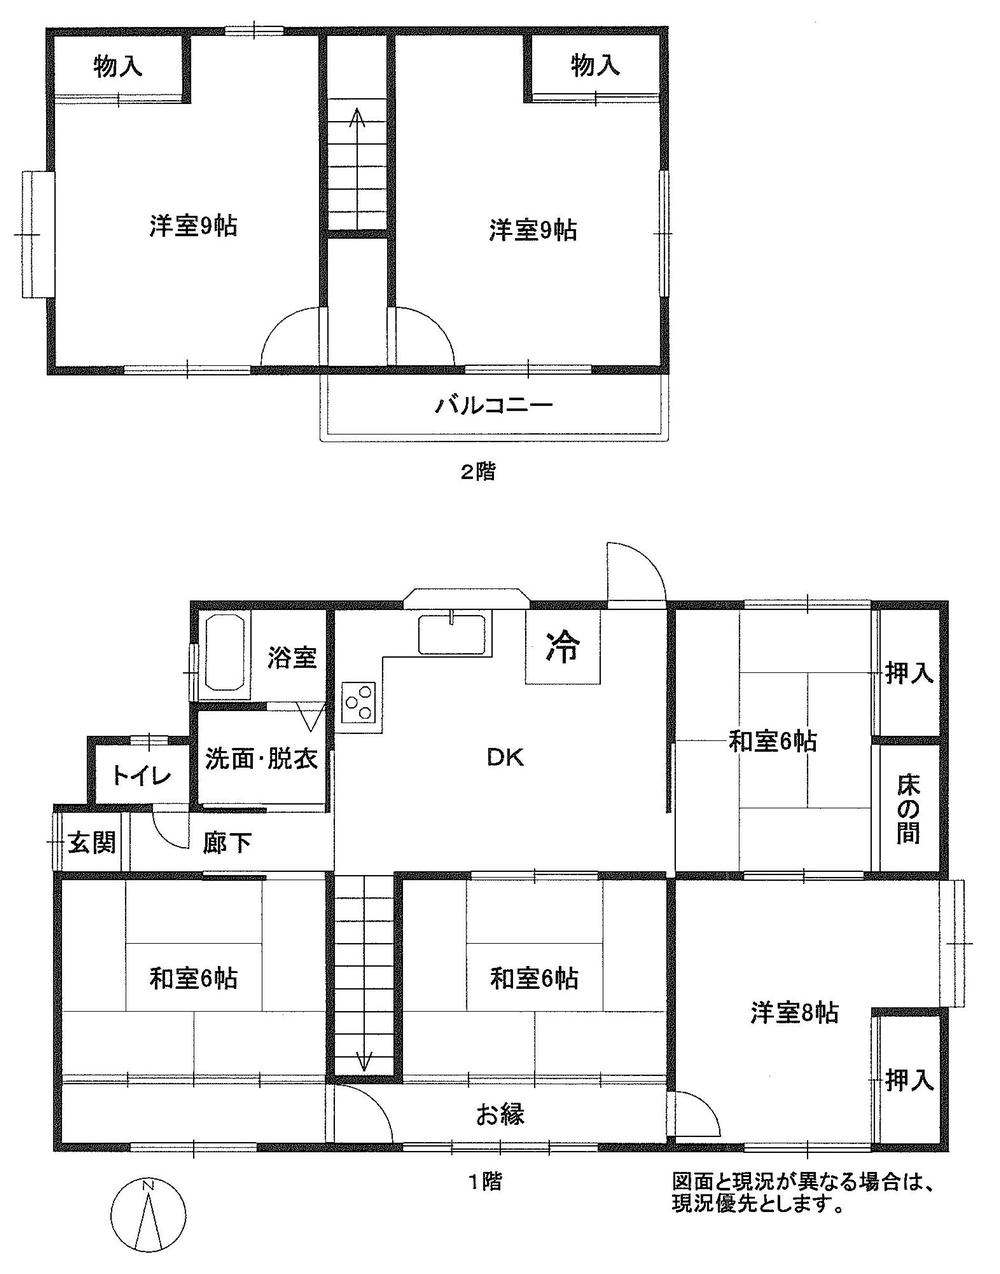 Floor plan. 13.8 million yen, 6DK, Land area 268.37 sq m , Building area 126.25 sq m